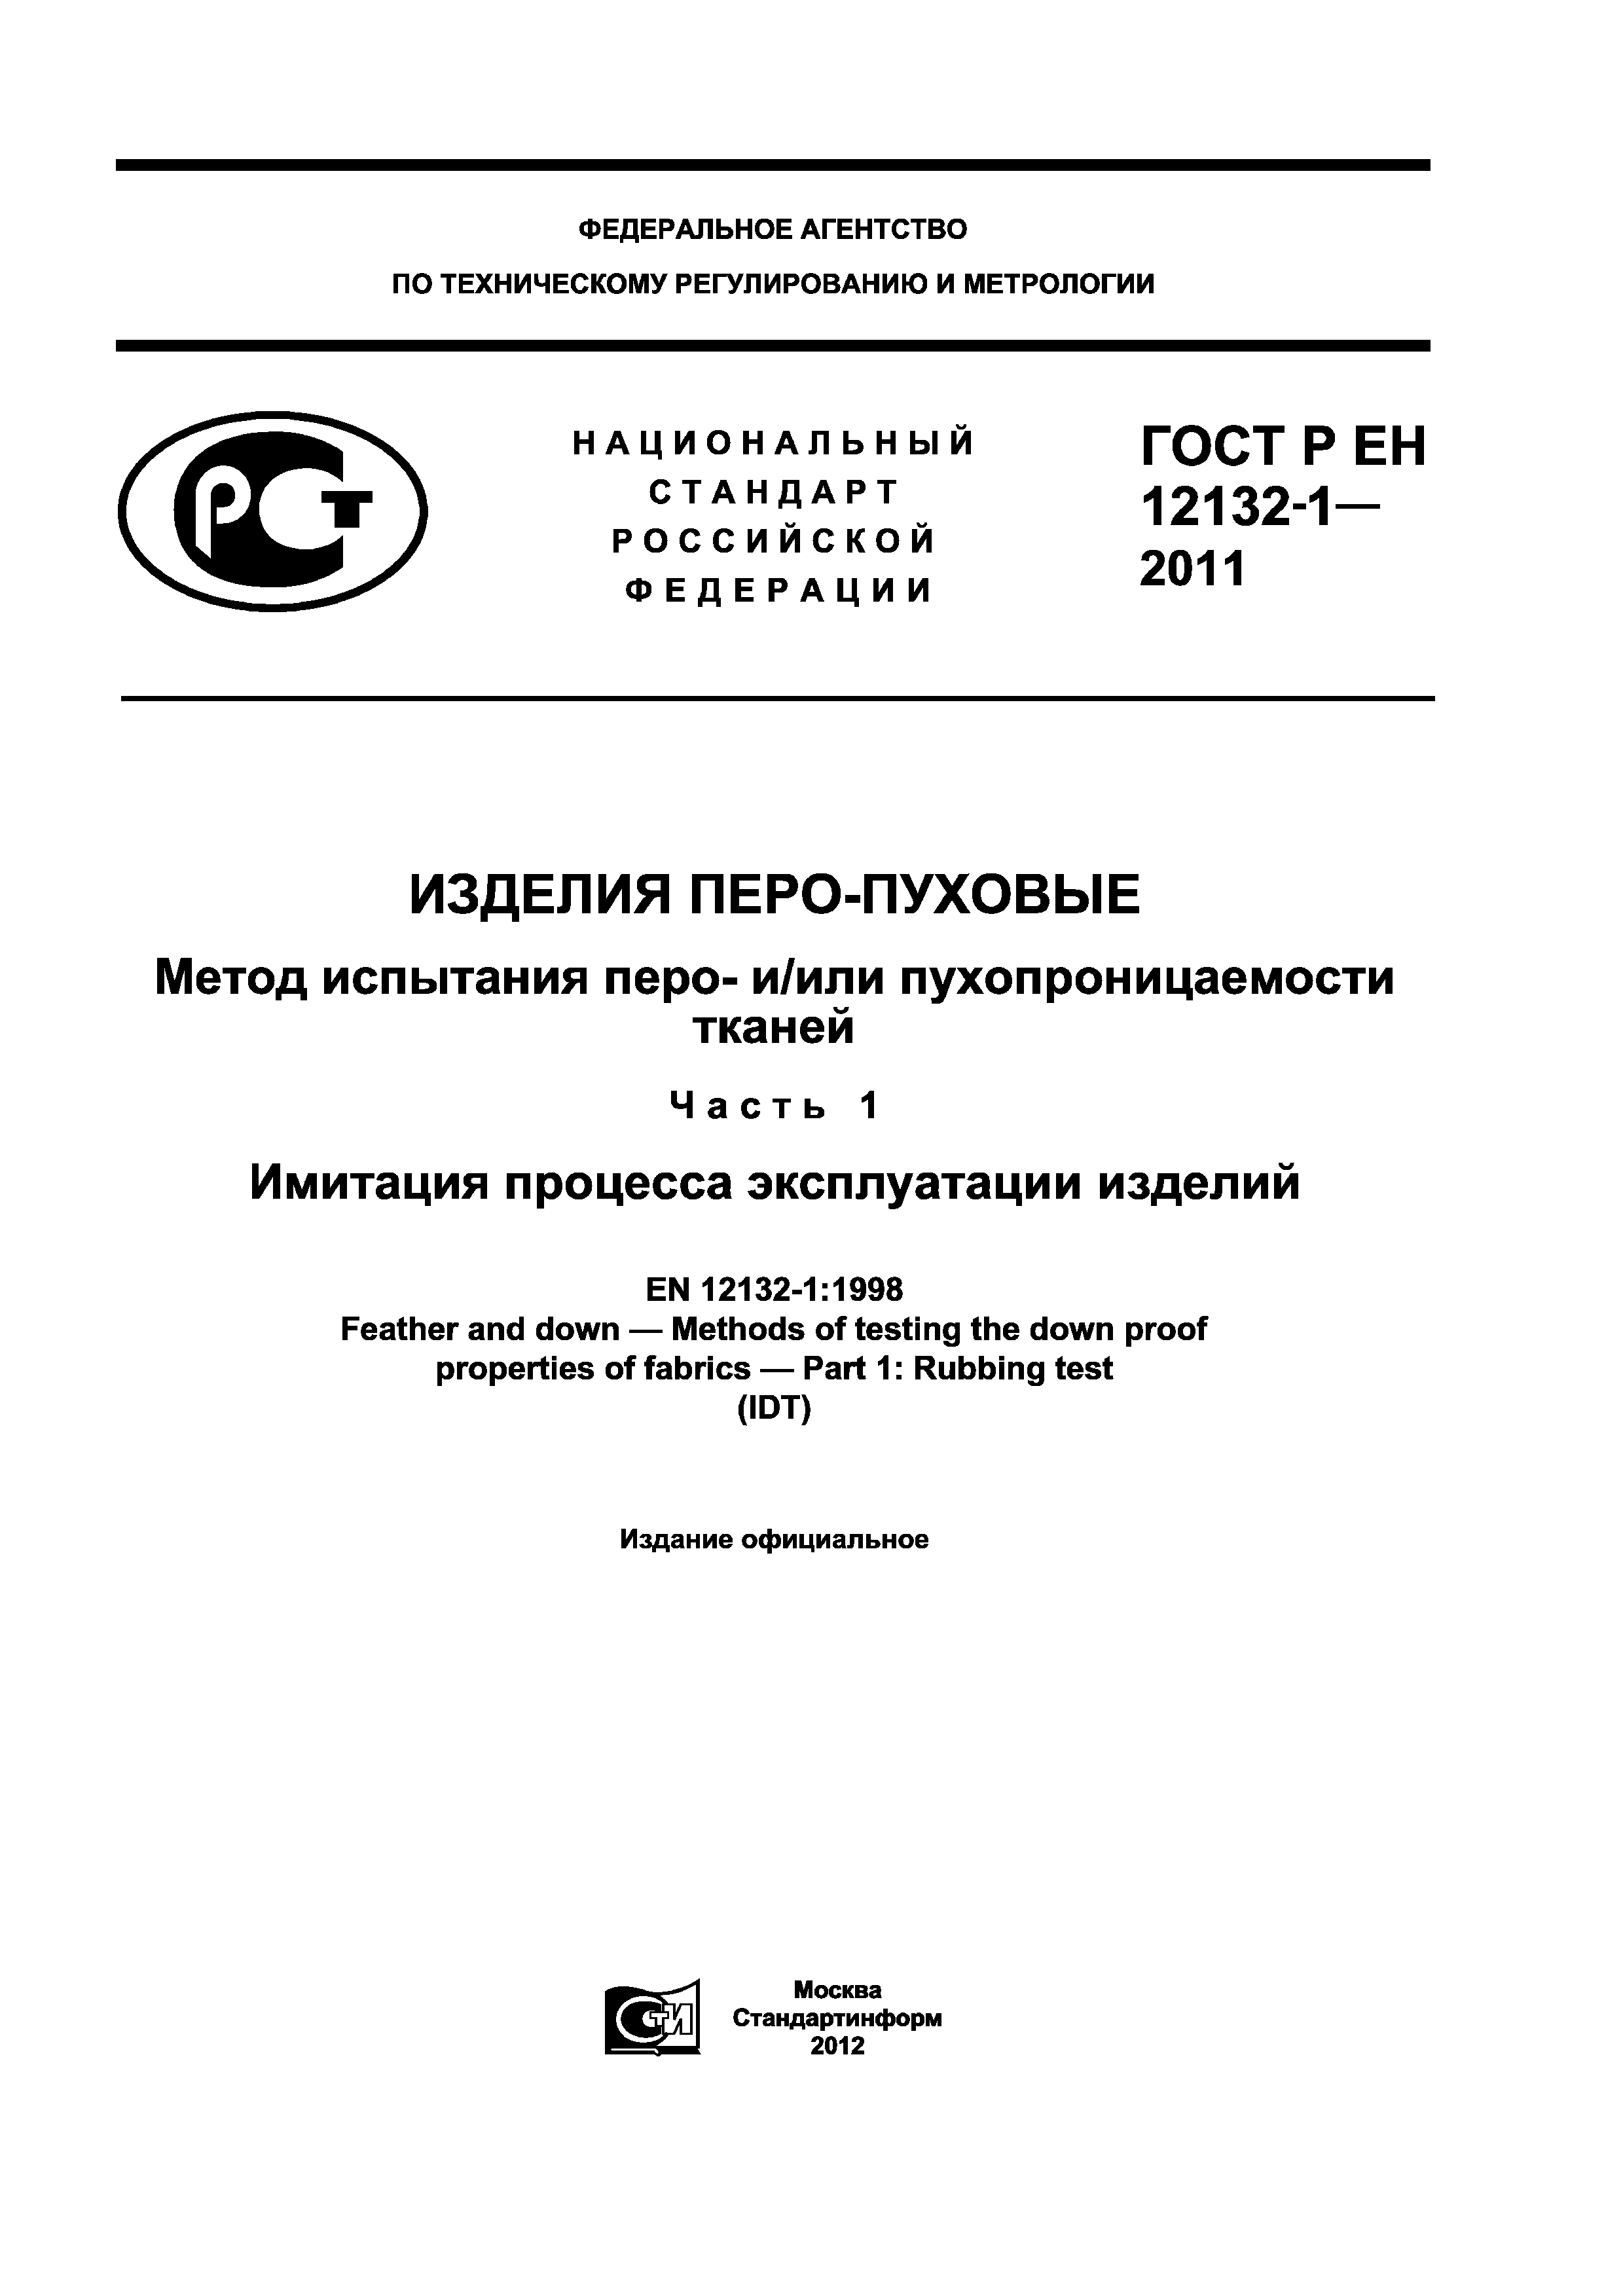 ГОСТ Р ЕН 12132-1-2011